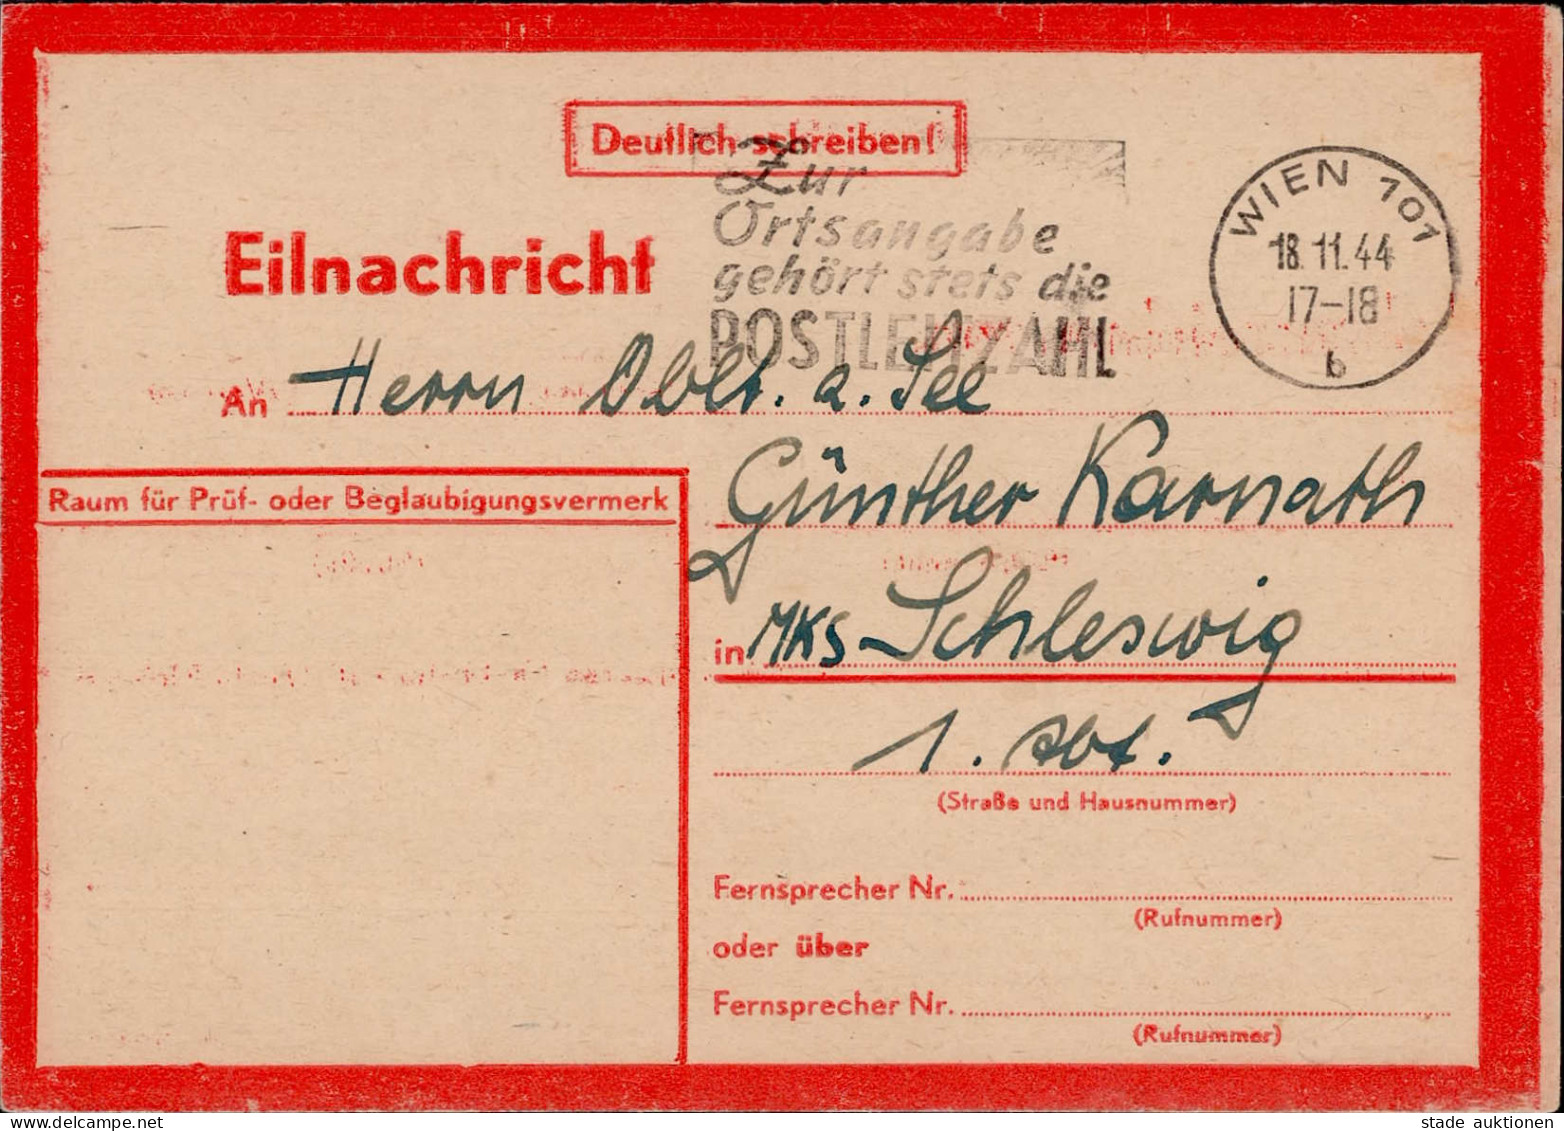 Feldpost WK II Eilnachrichten-Karte Lebenszeichen Rot Wien 18.11.1944 An Einen Oberleutnant Zur See ...bombengeschädigt  - Weltkrieg 1939-45